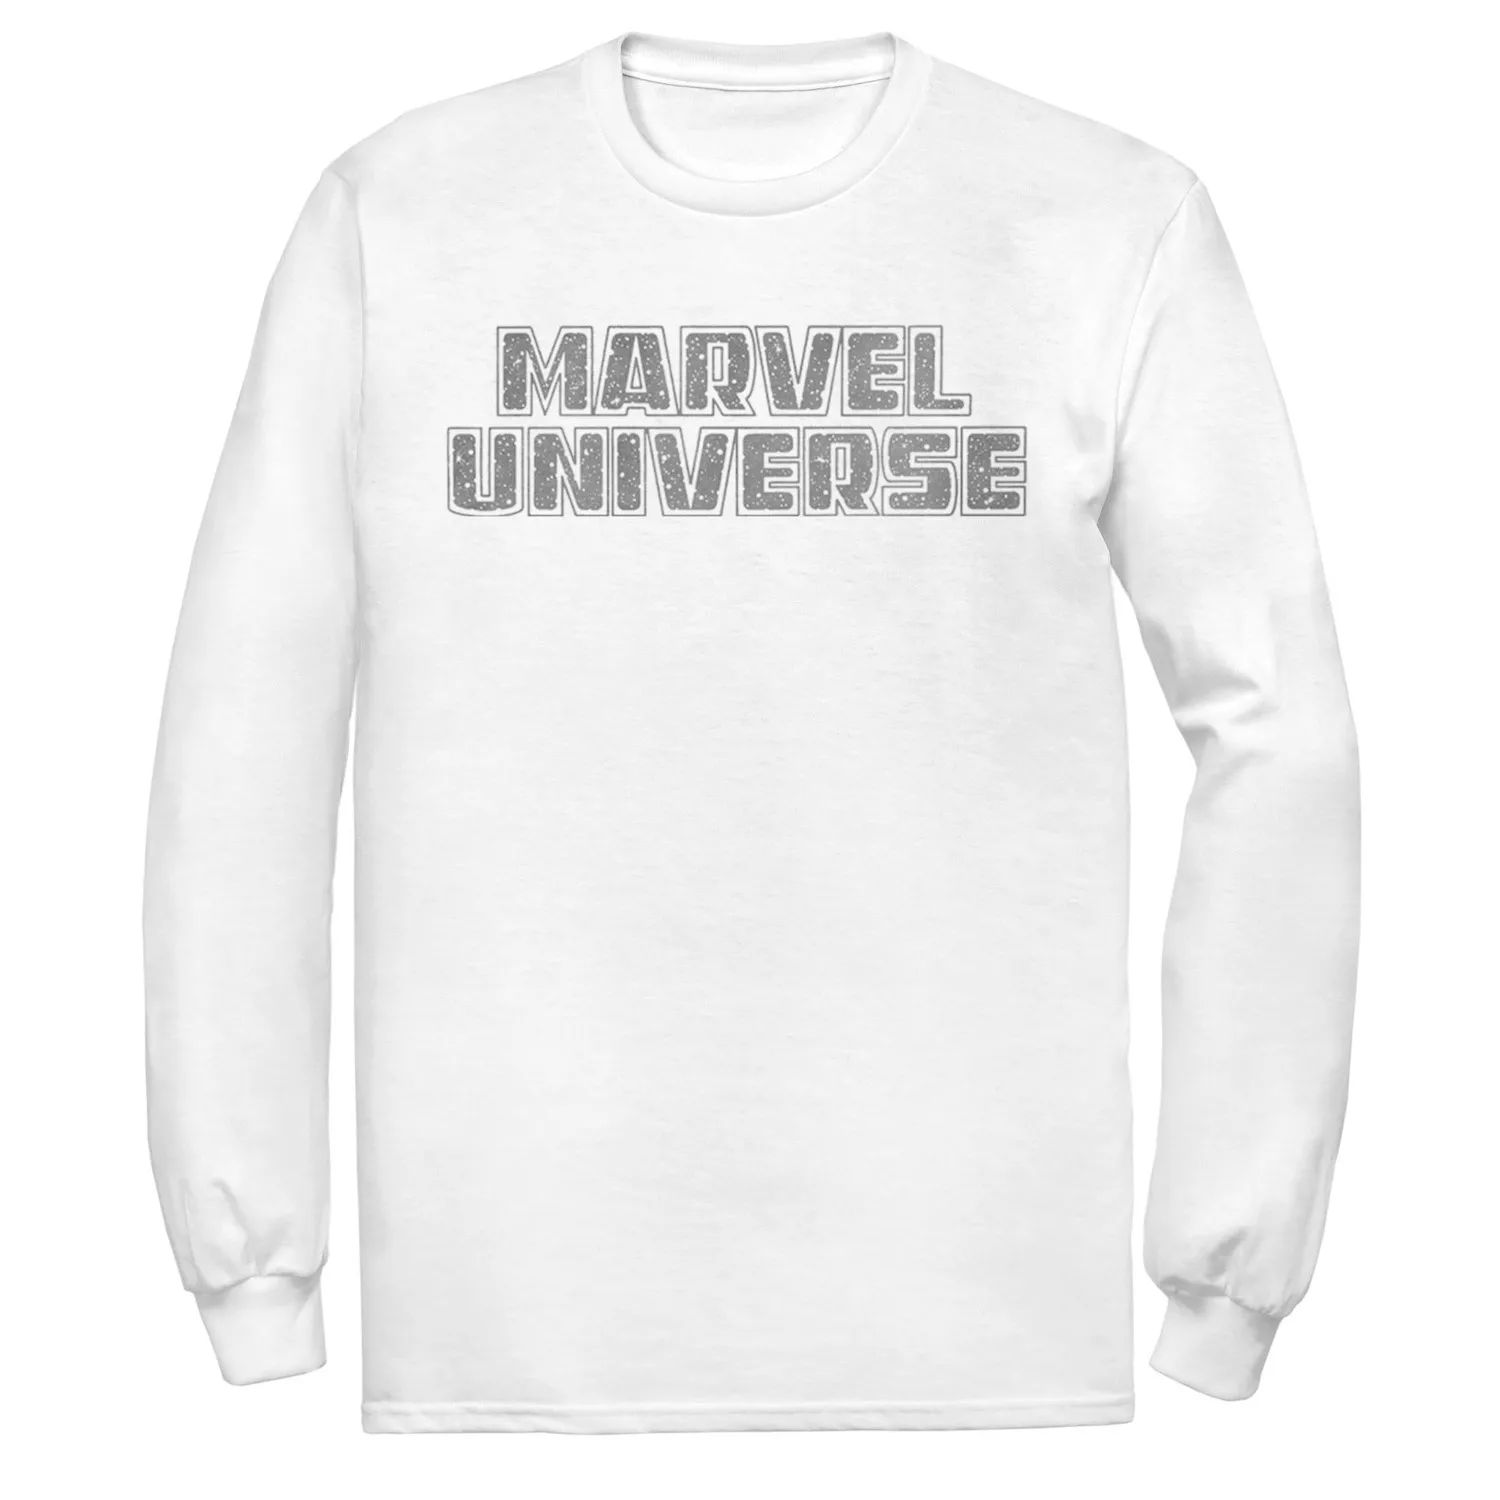 Мужская футболка с простым логотипом Marvel Universe